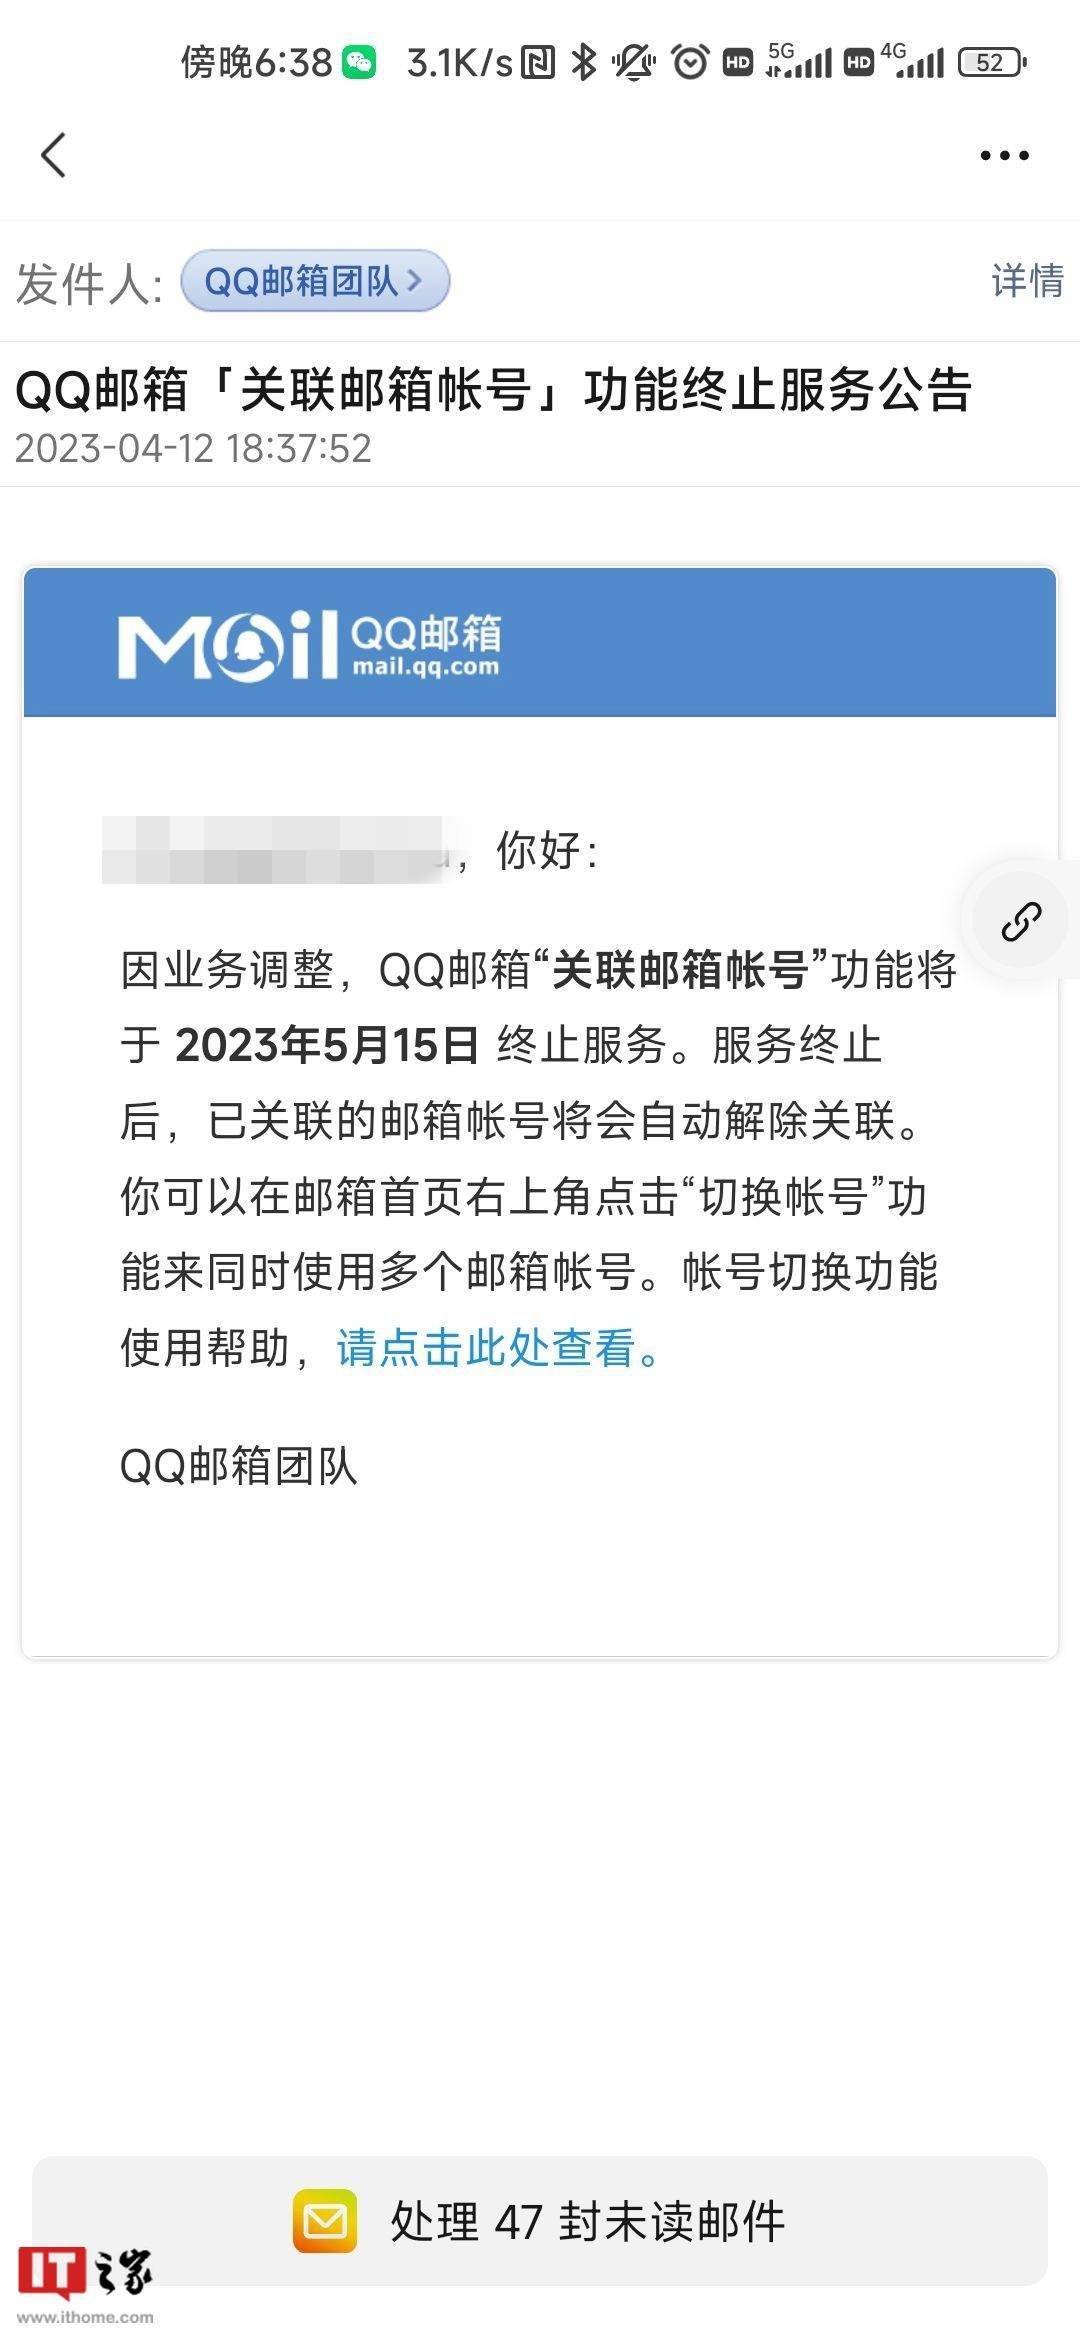 qq登录网页手机版:腾讯 QQ 邮箱宣布“关联邮箱帐号”功能 2023 年 5 月 15 日下线